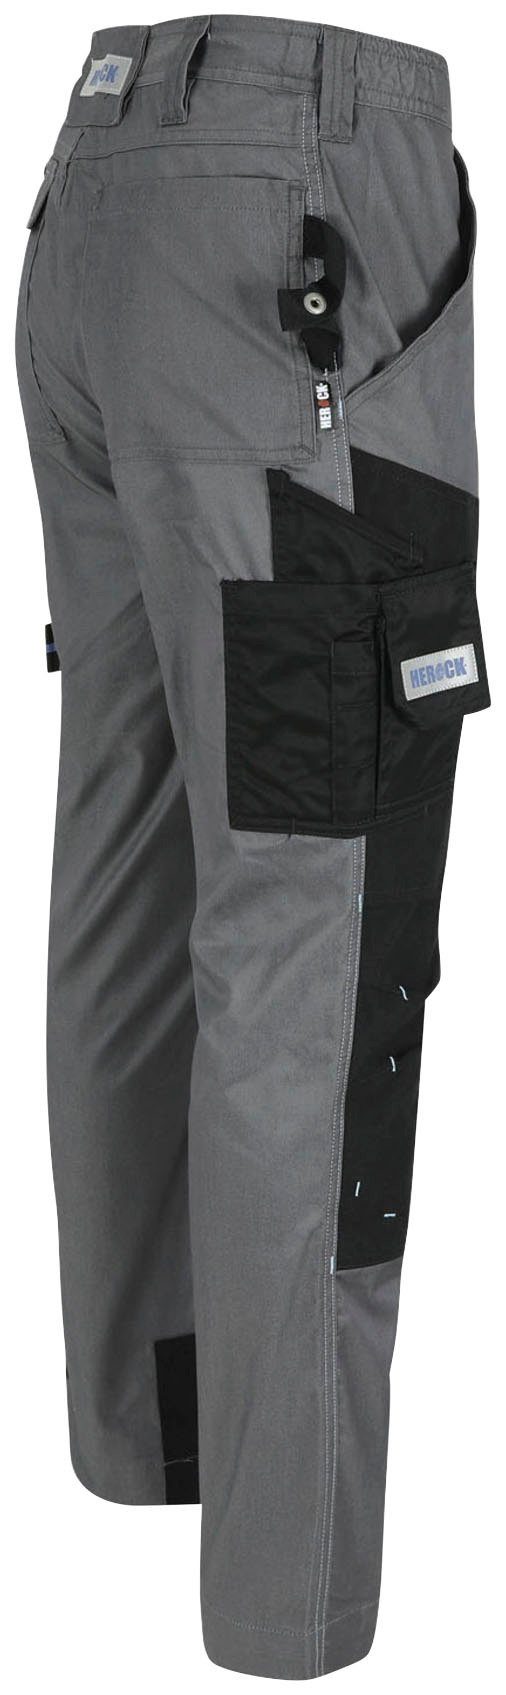 Capua Farben mehrere Stretch, grau mit Taschen, Coolmax® Hose -Techn.; Viele Arbeitshose leicht Herock